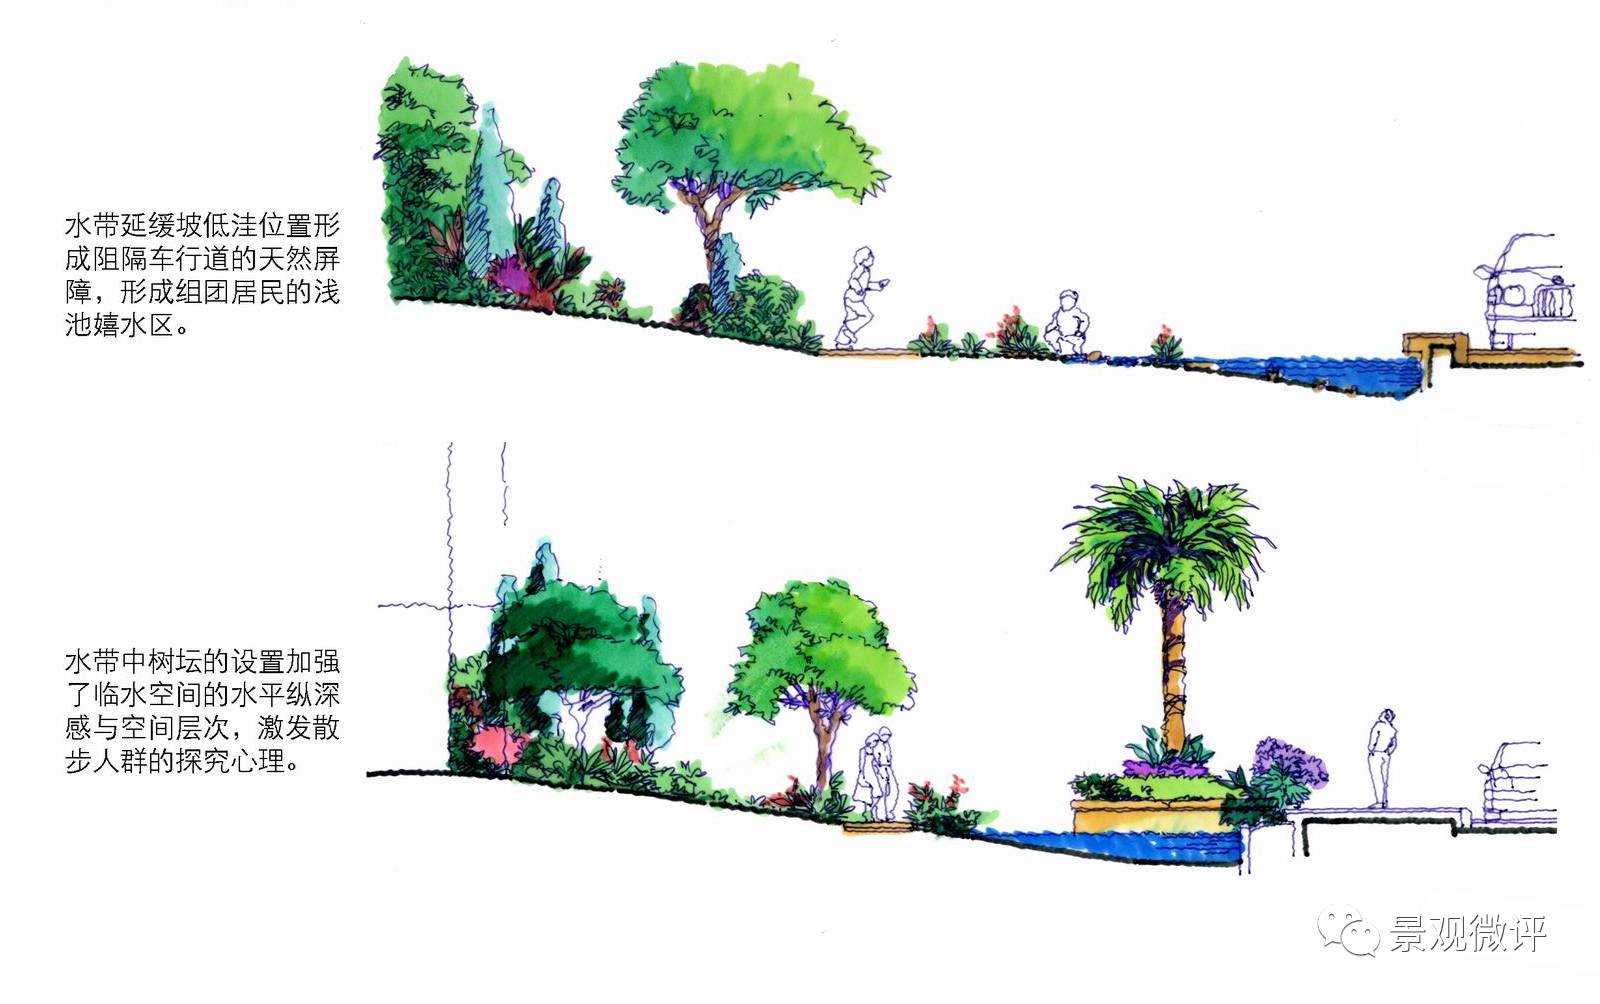 水系驳岸通用做法CAD施工图图-园林景观节点详图-筑龙园林景观论坛